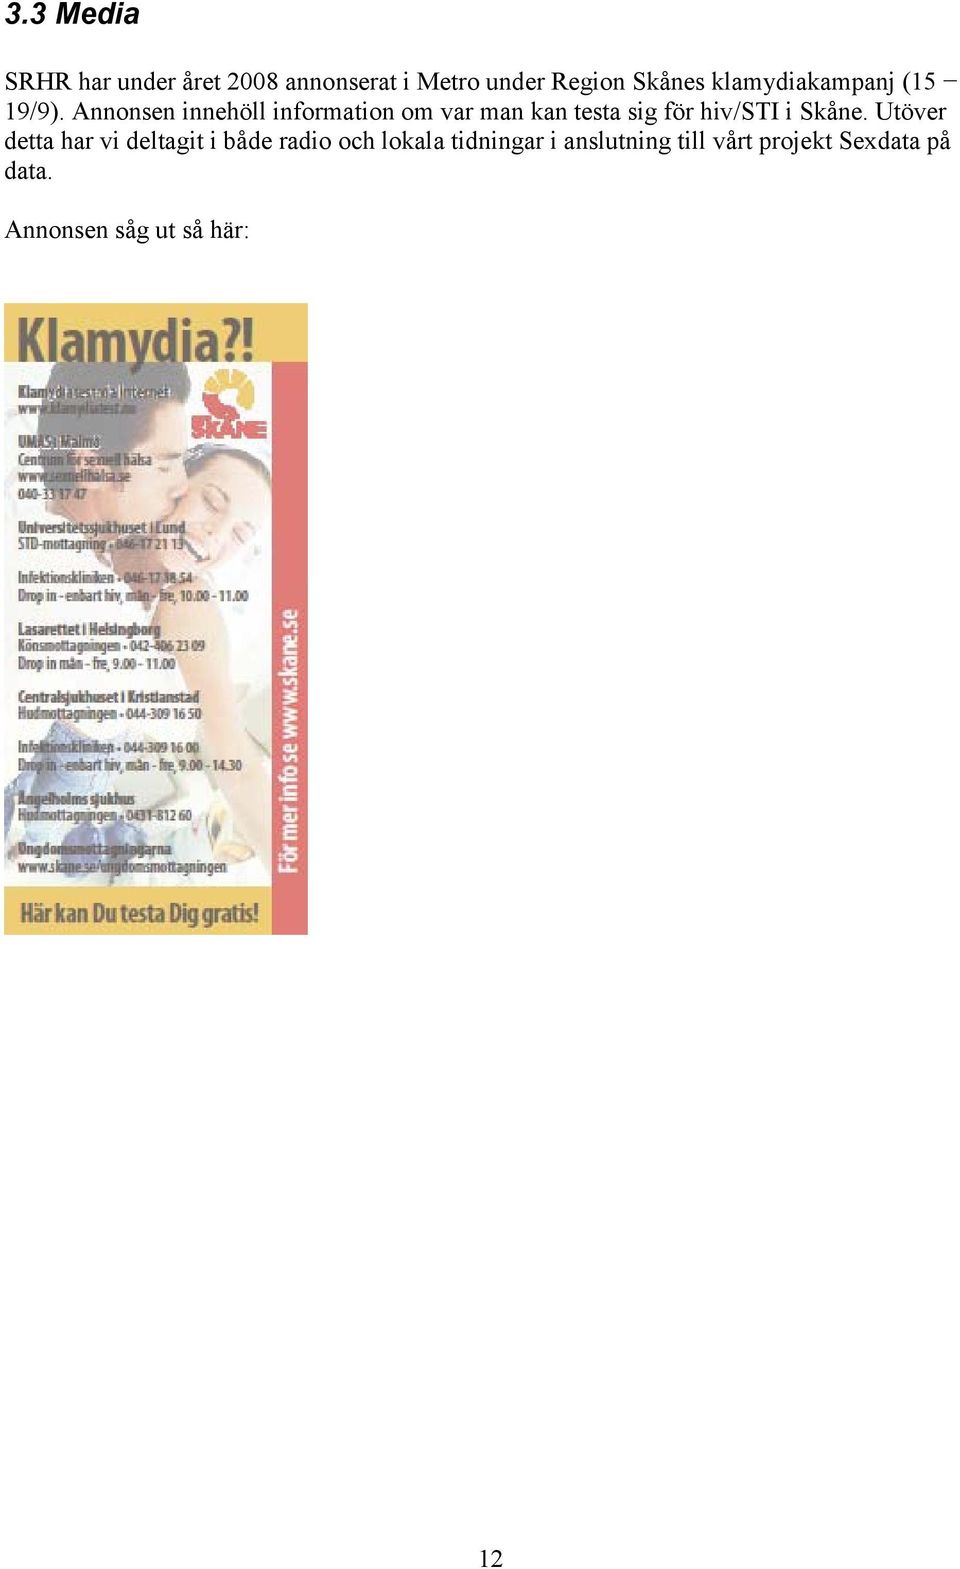 Annonsen innehöll information om var man kan testa sig för hiv/sti i Skåne.